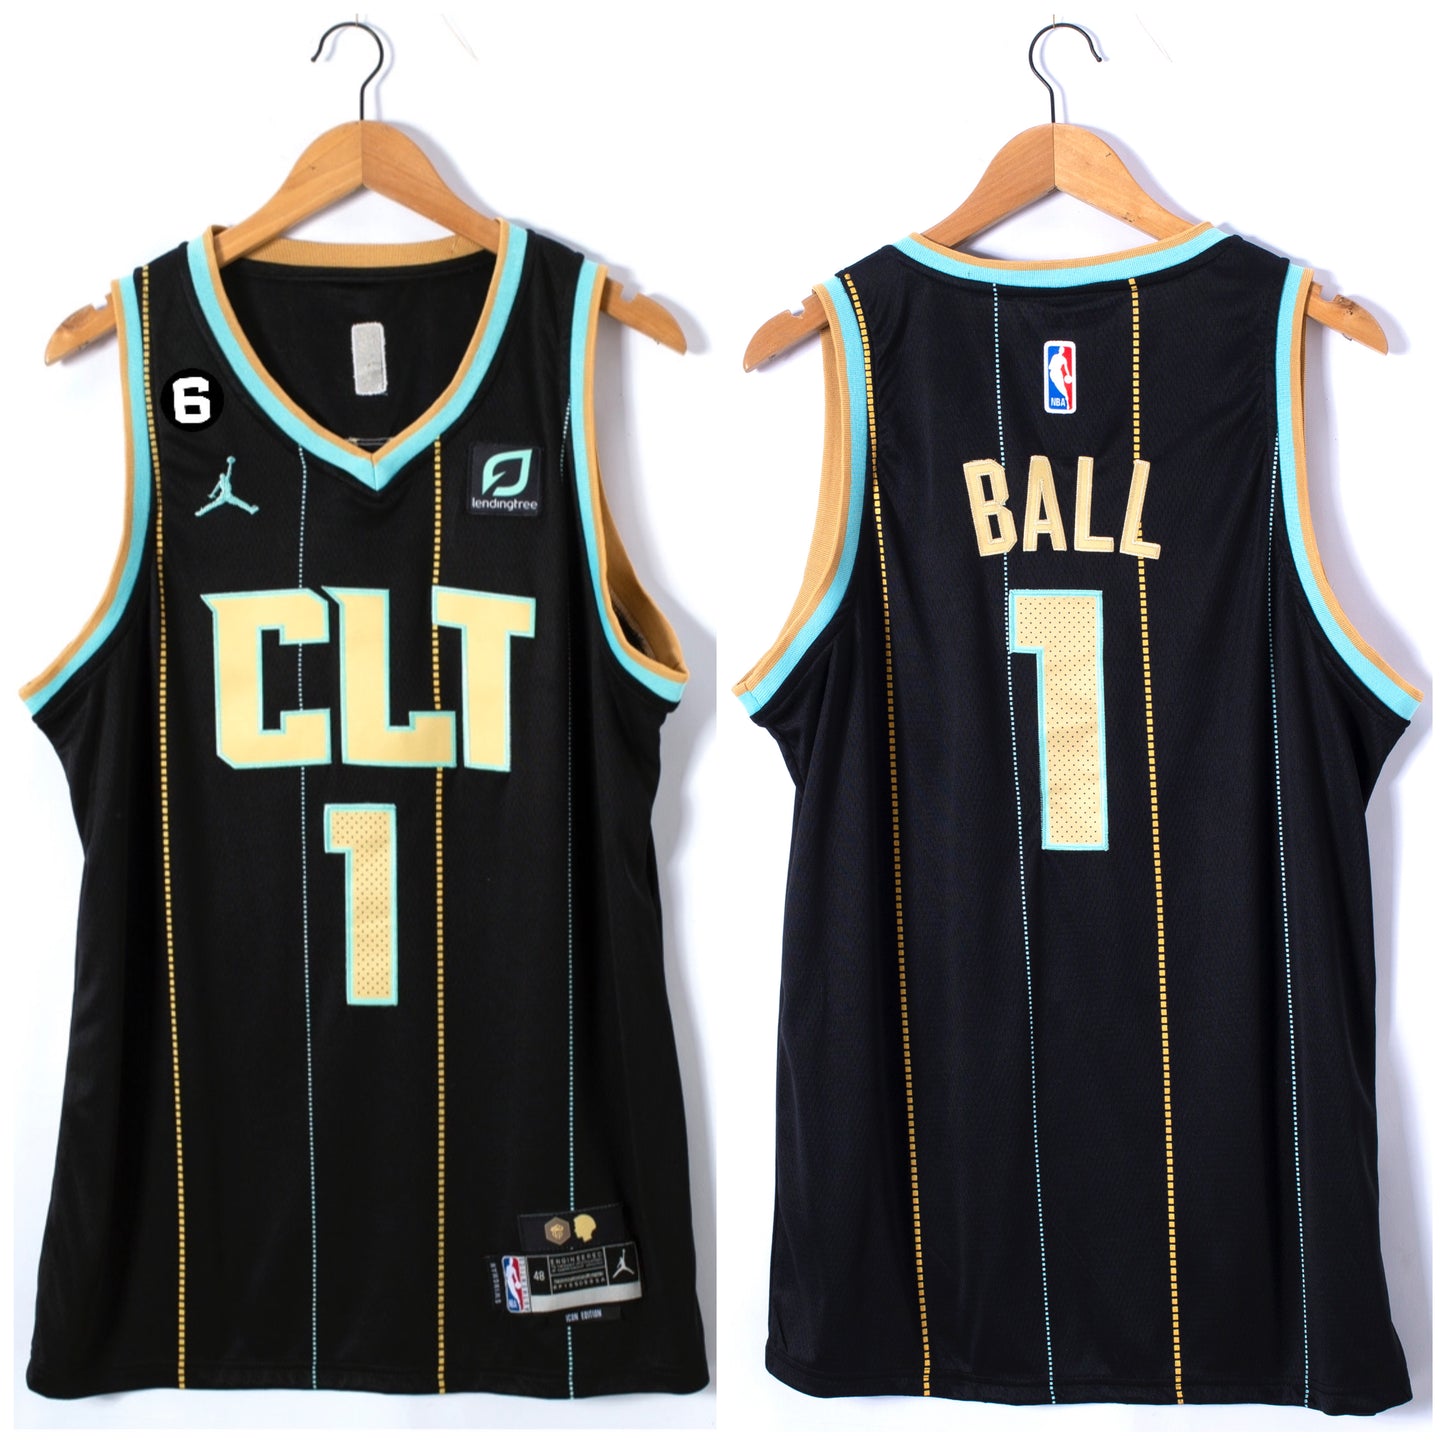 BALL 1 BLACK CLT Charlotte Hornets NBA Jersey